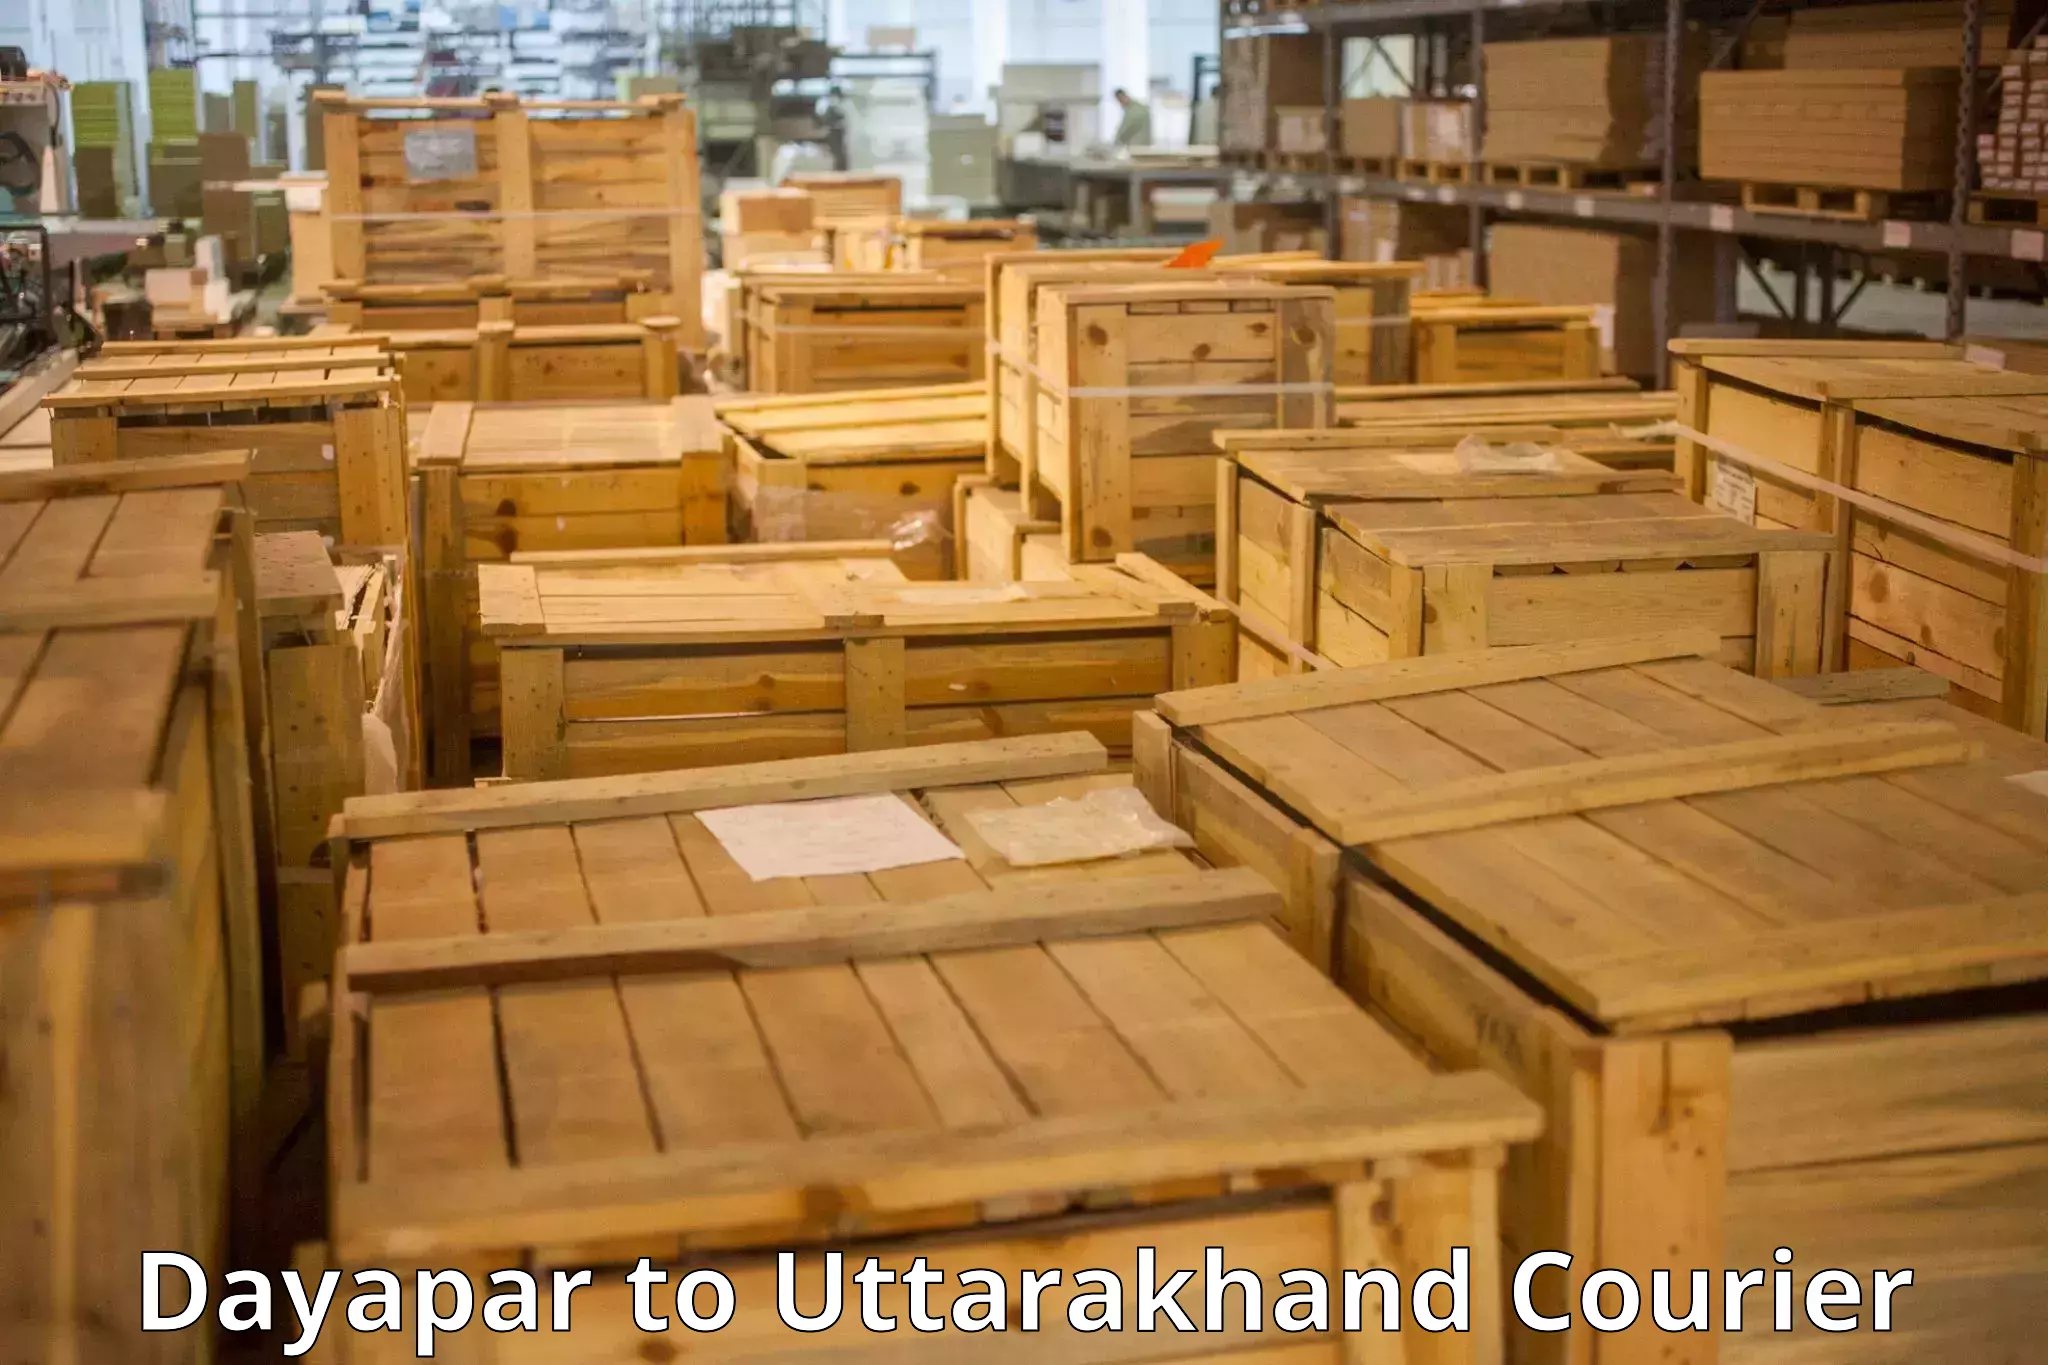 Luggage transport consulting Dayapar to Uttarakhand